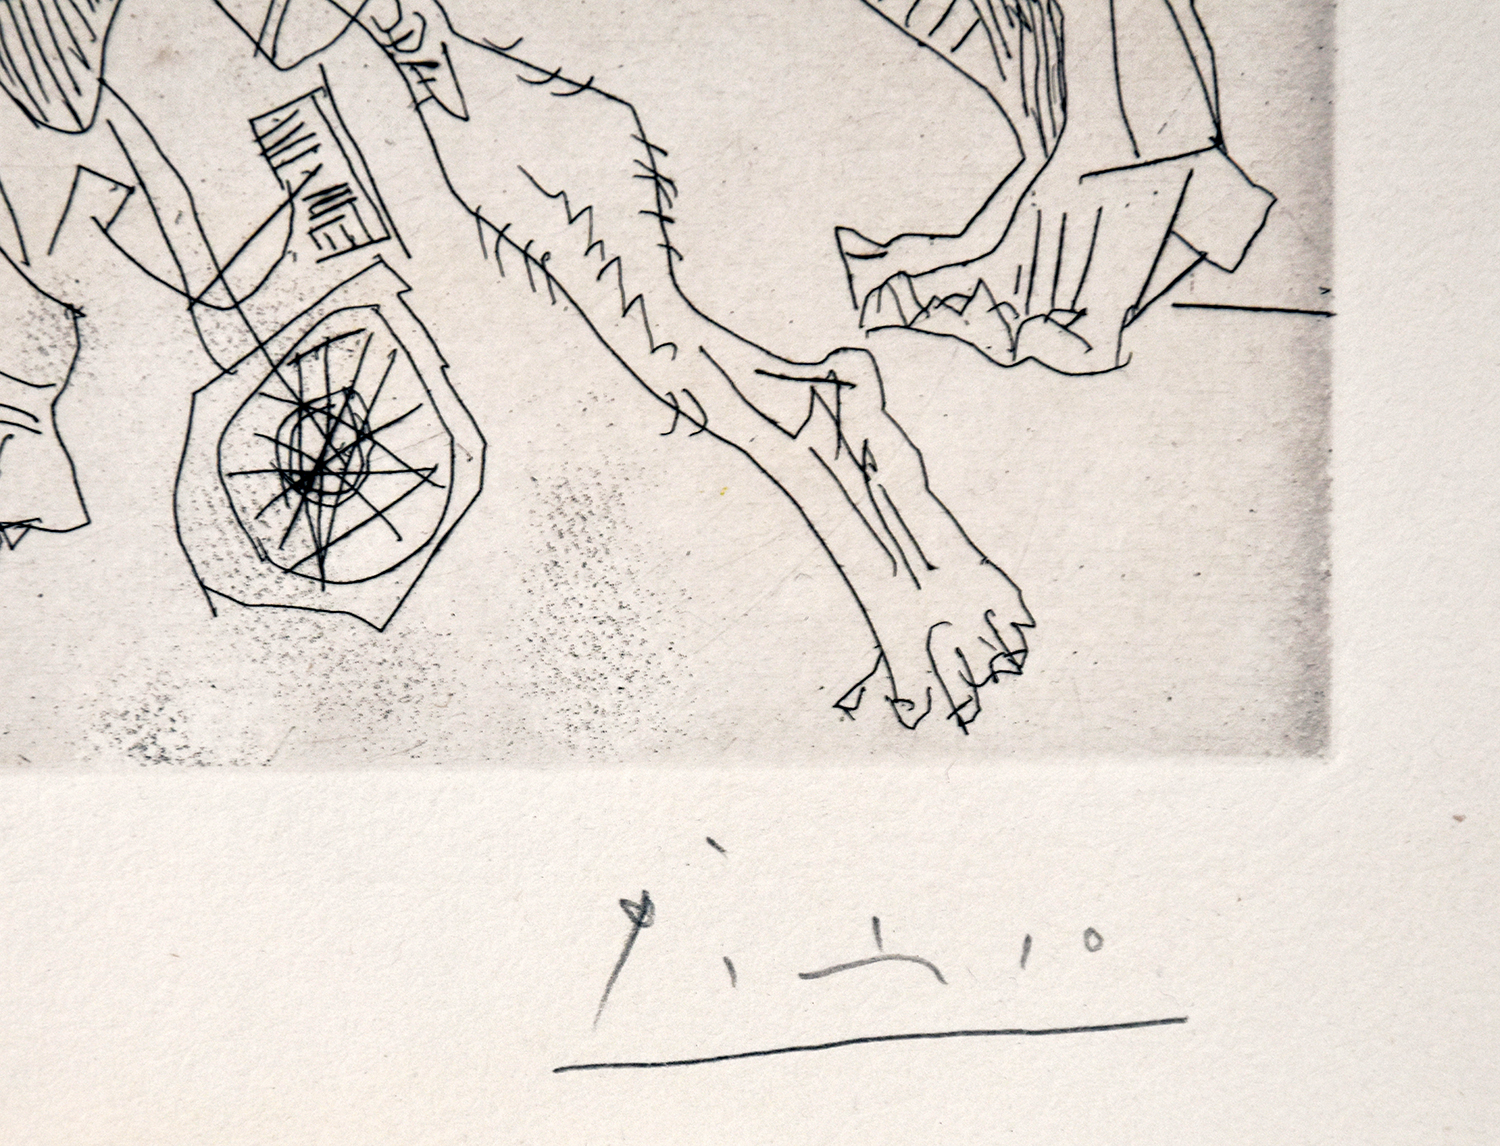 Pablo Picasso signature, Le Cocu Magnifique (The Magnificent Cuckold) Plate 5, 1968